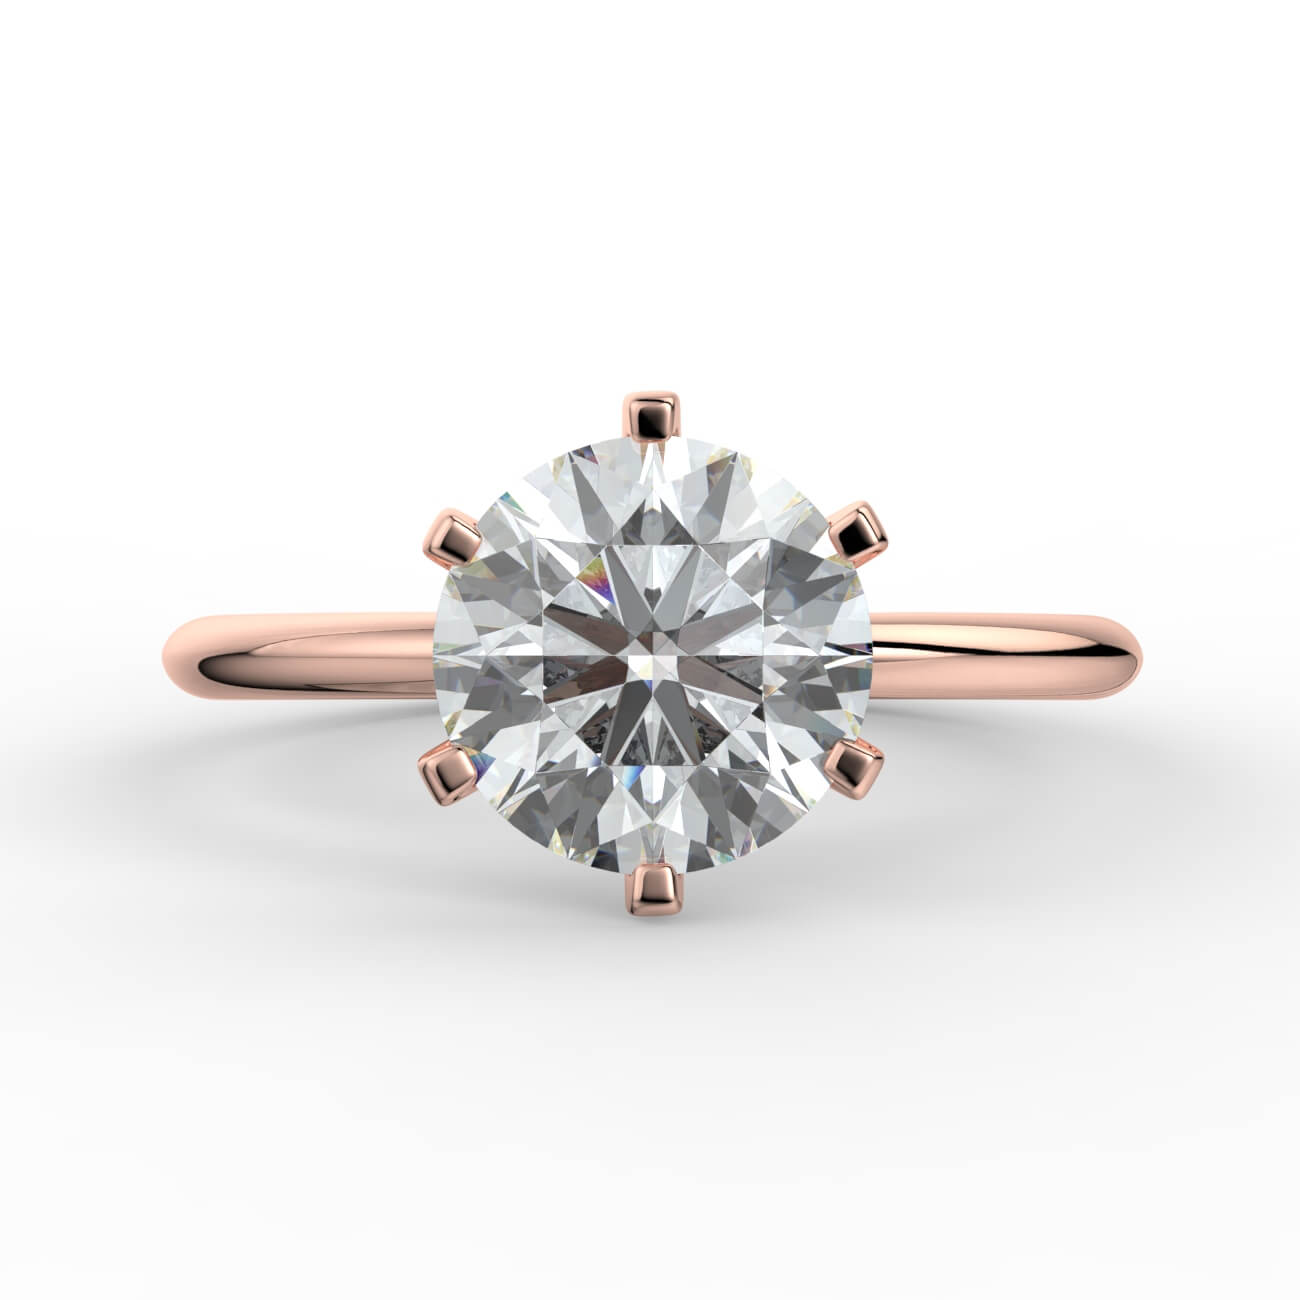 Knife-edge solitaire diamond engagement ring in rose gold – Australian Diamond Network